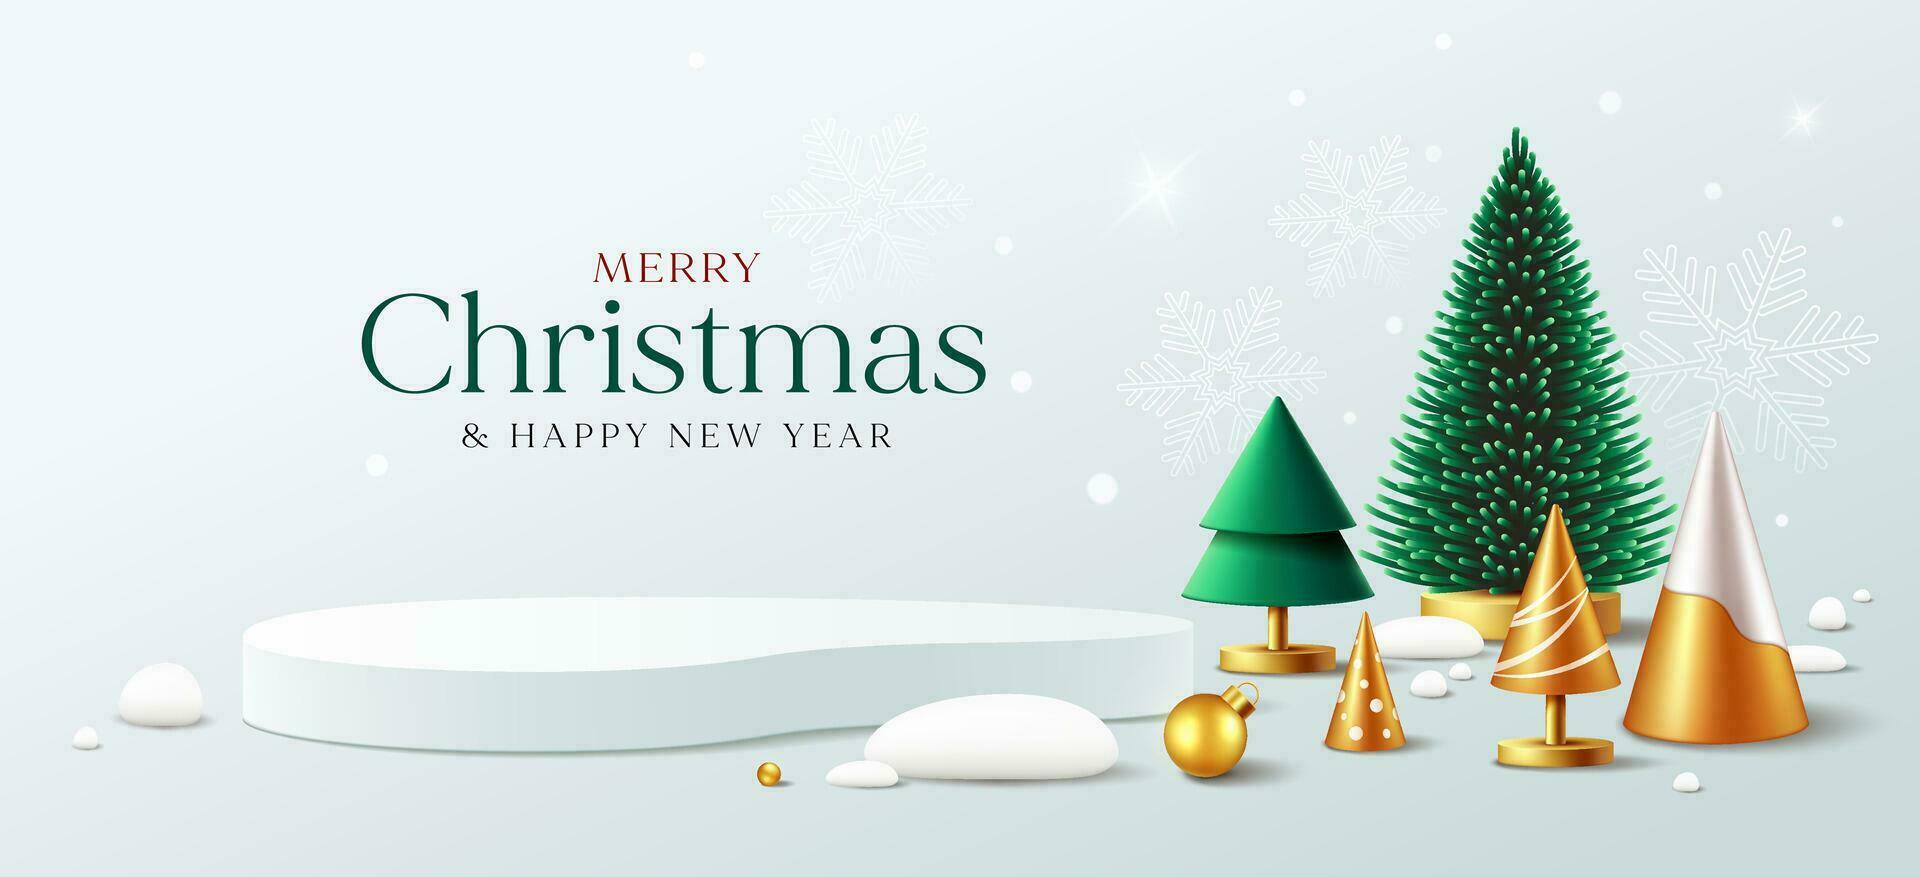 alegre Navidad y contento nuevo año, verde y oro pino árbol, podio monitor adornos pancartas diseño fondo, eps10 vector ilustración